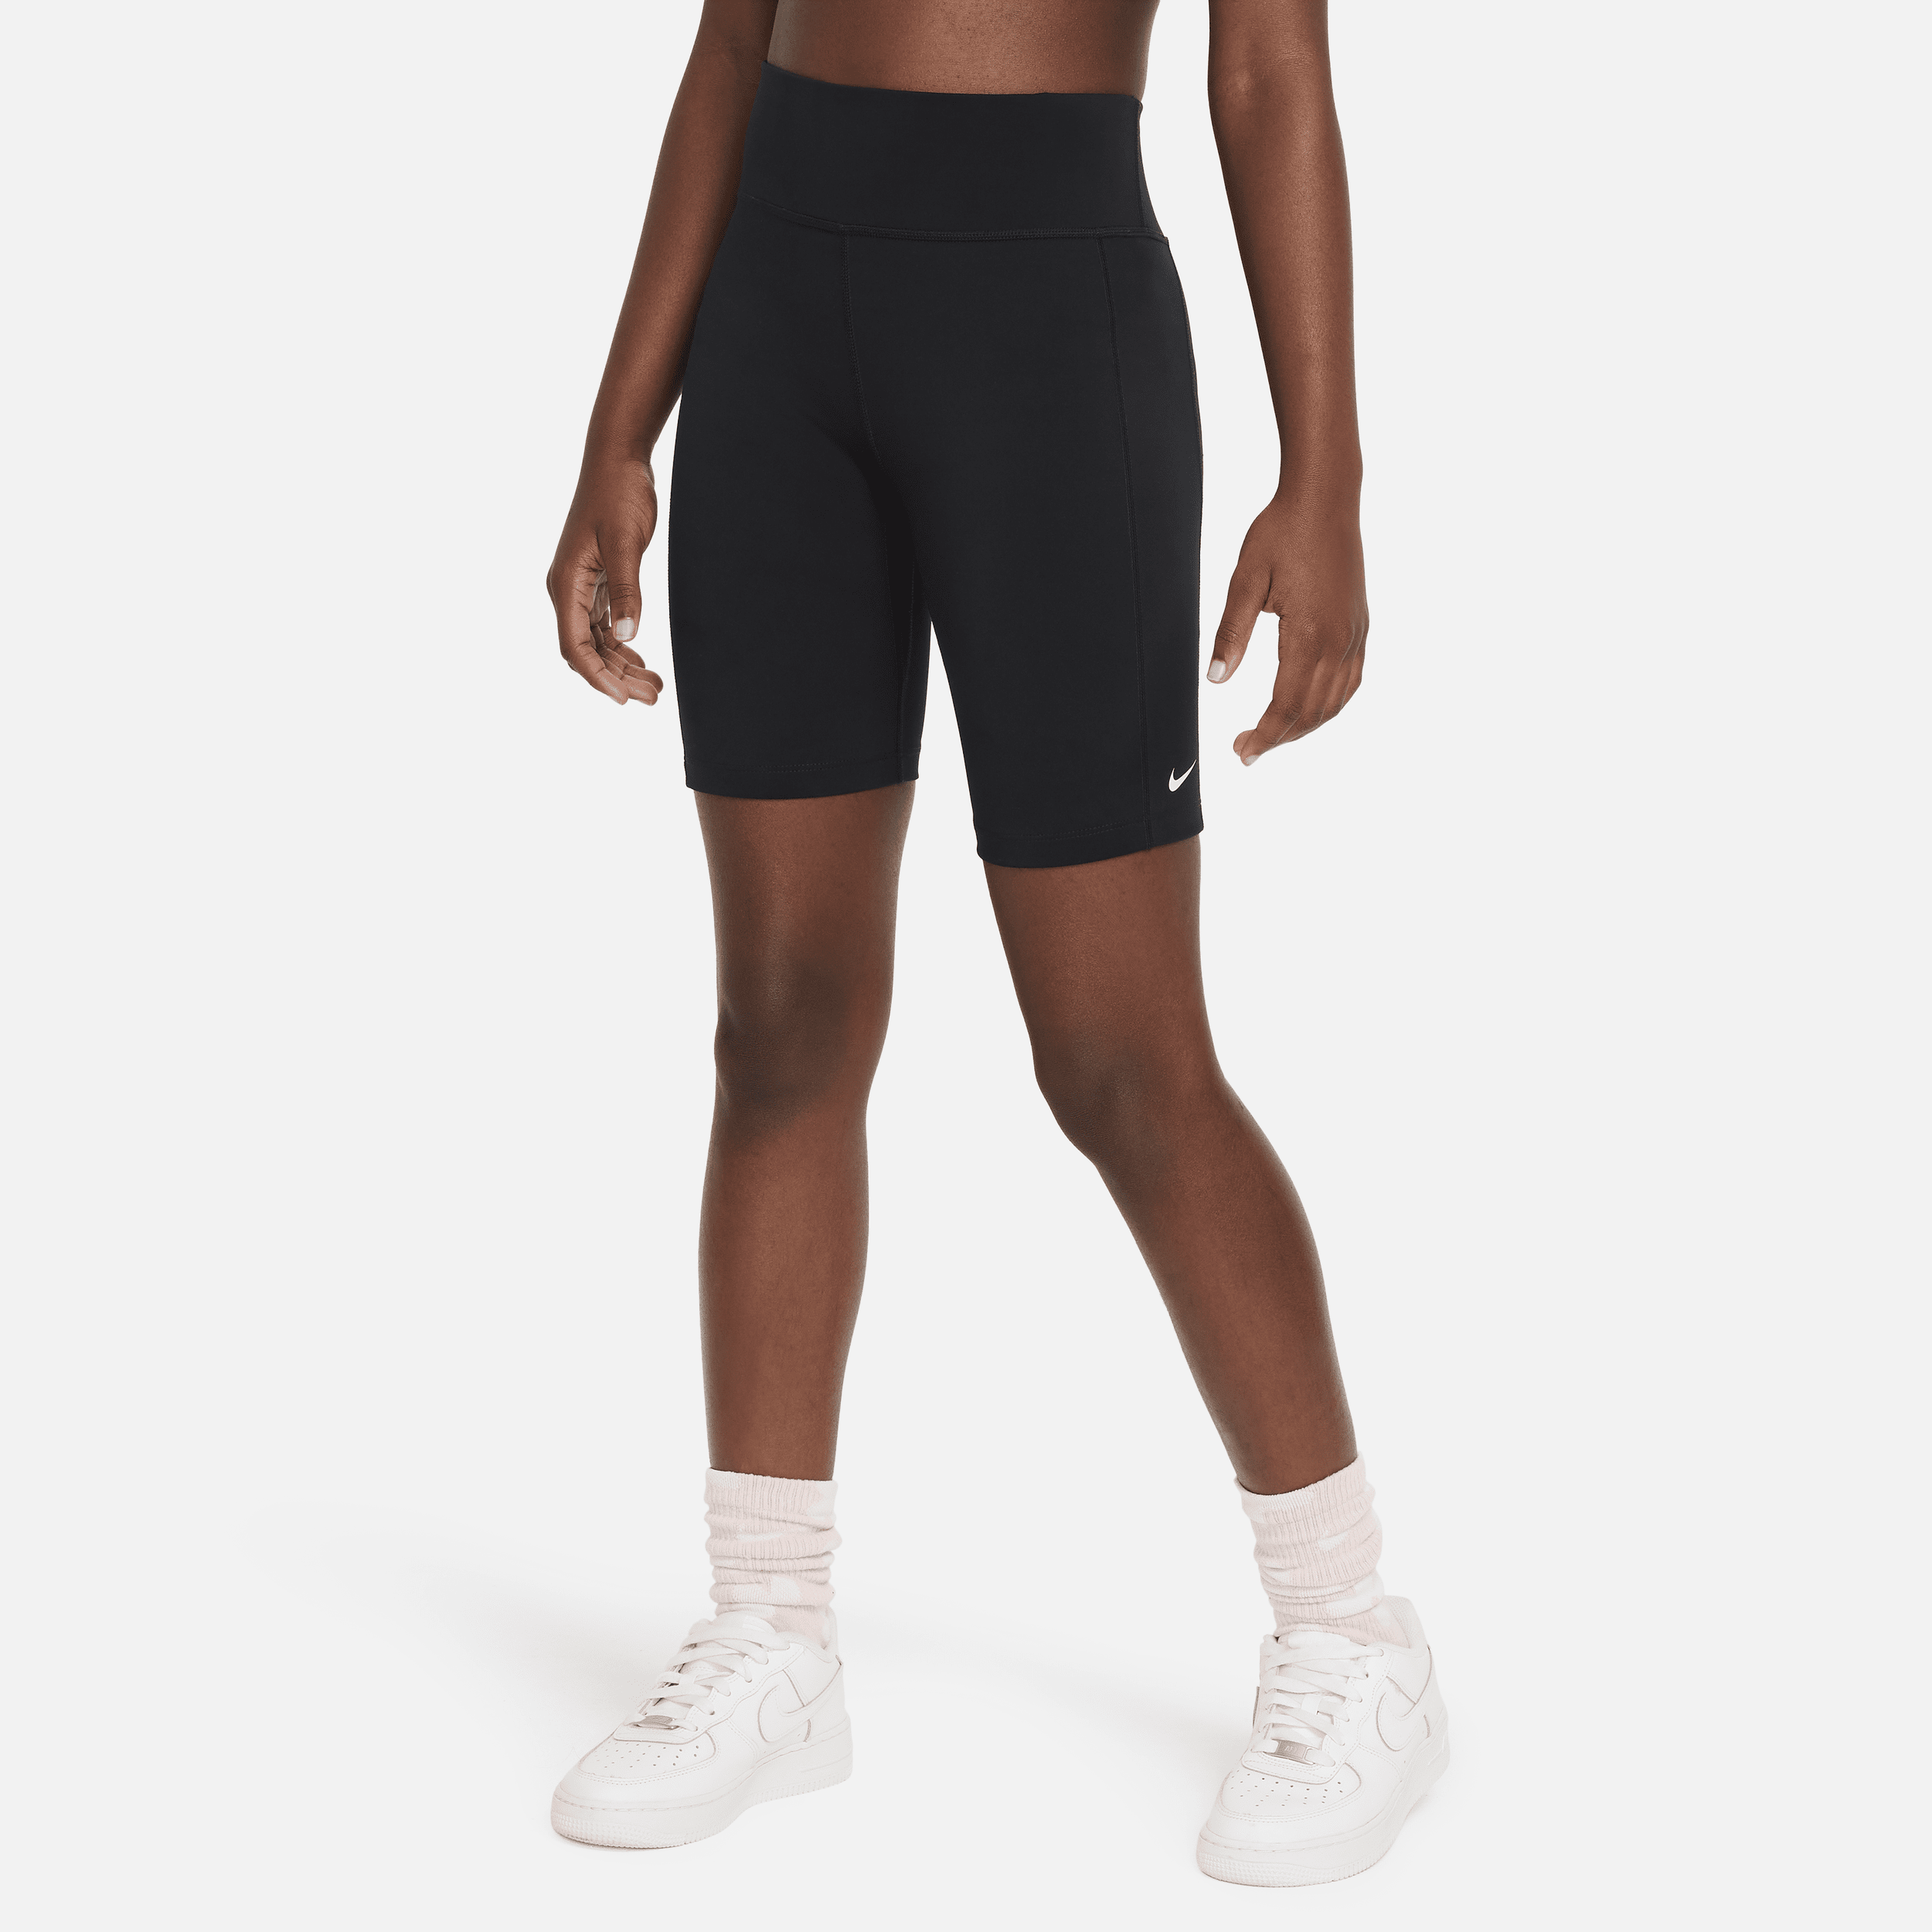 Nike One Leak Protection: Period Big Kids' (girls') High-waisted 7" Biker Shorts In Black